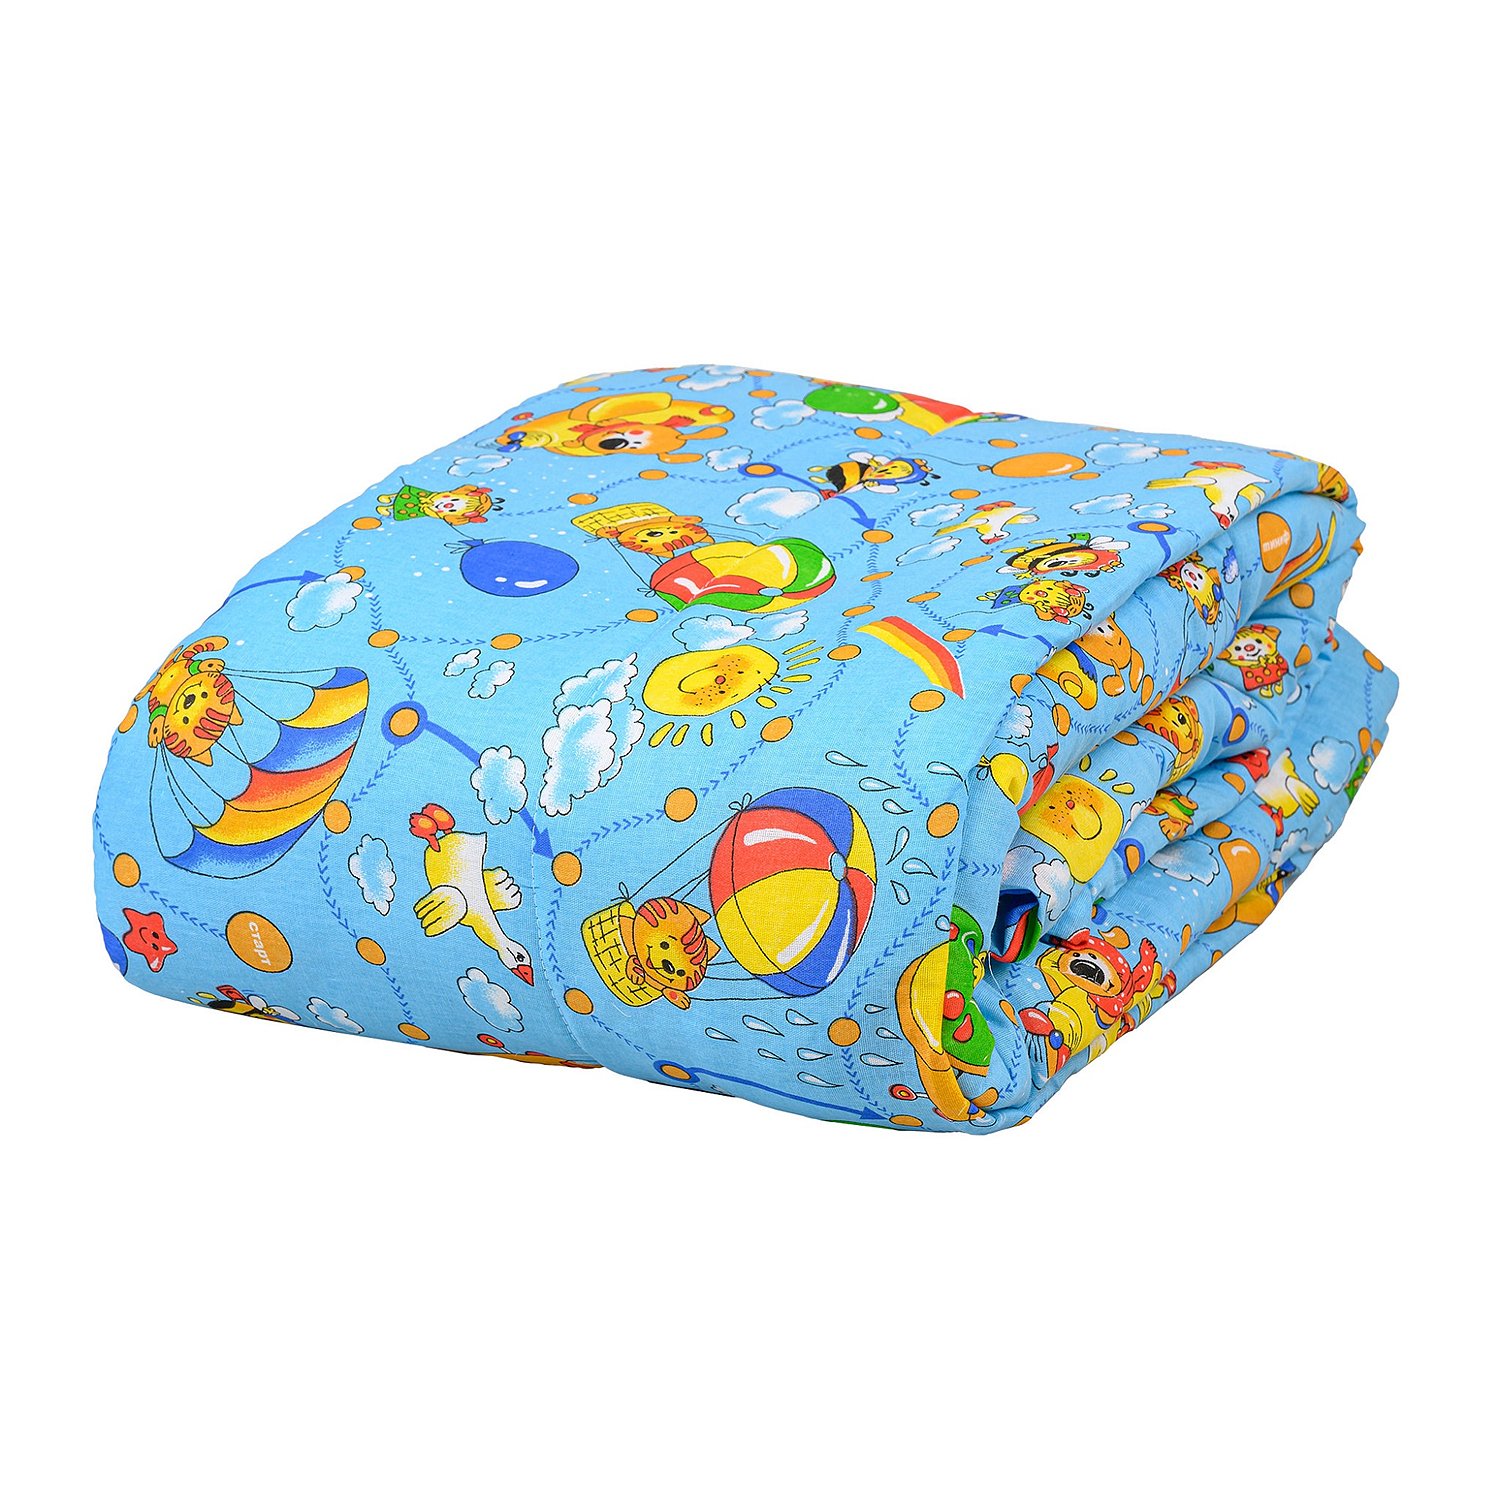 Детское одеяло Jamala Теплое (110х140 см), размер 110х140 см ml875781 Детское одеяло Jamala Теплое (110х140 см) - фото 1